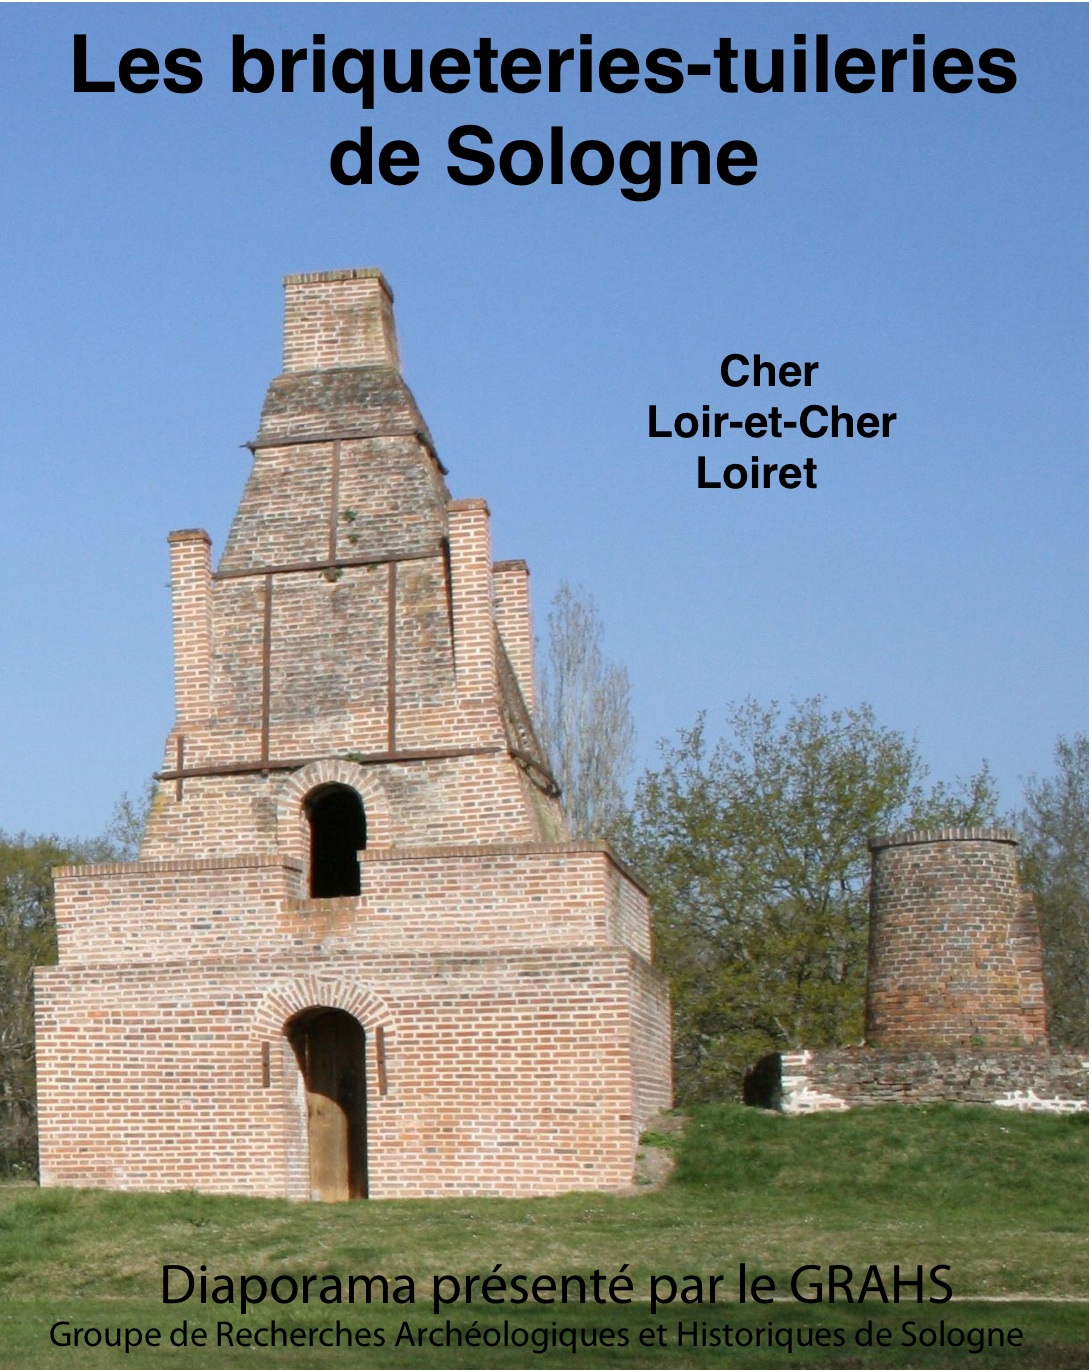 Briqueteries-tuileries de Sologne